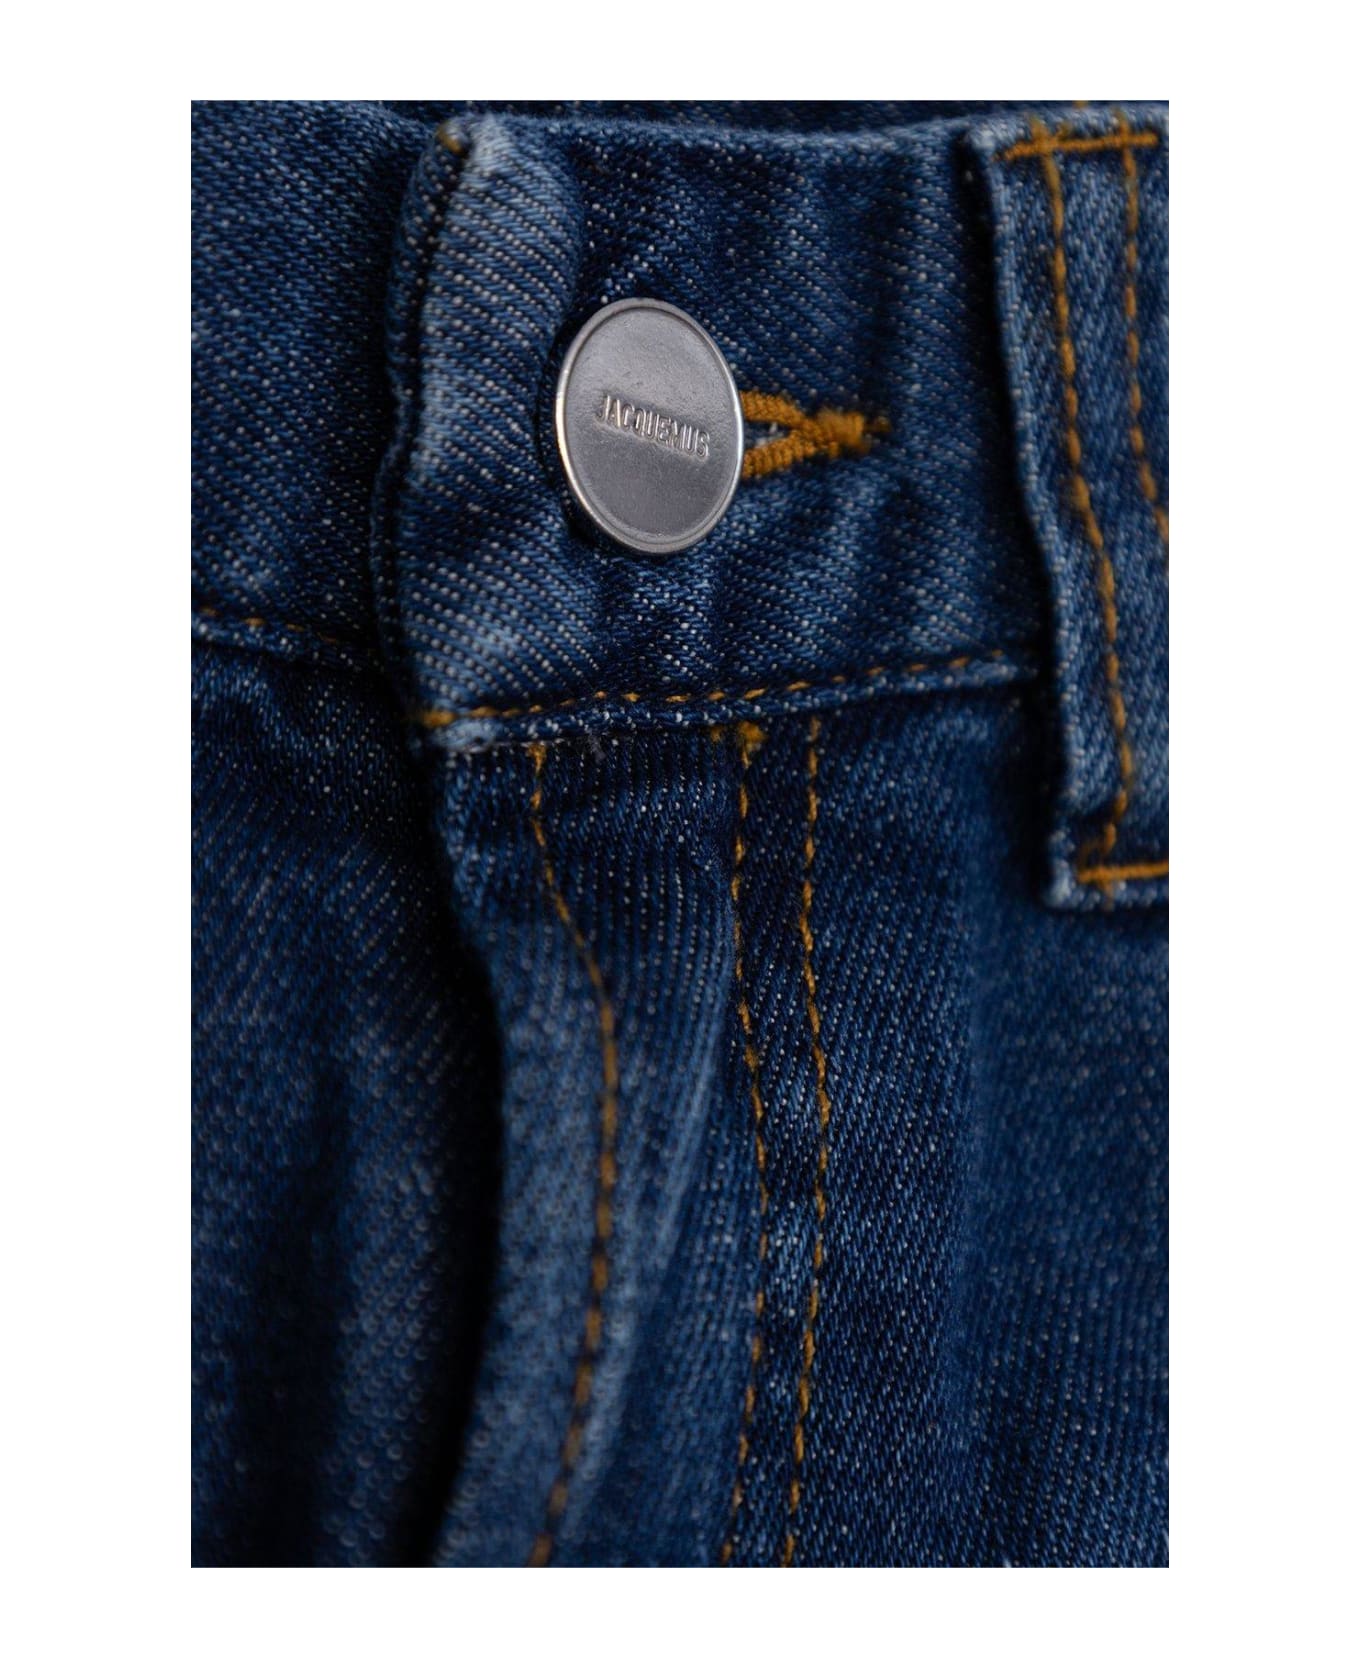 Jacquemus L'enfant Logo Patch Denim Jeans - DENIM BLUE